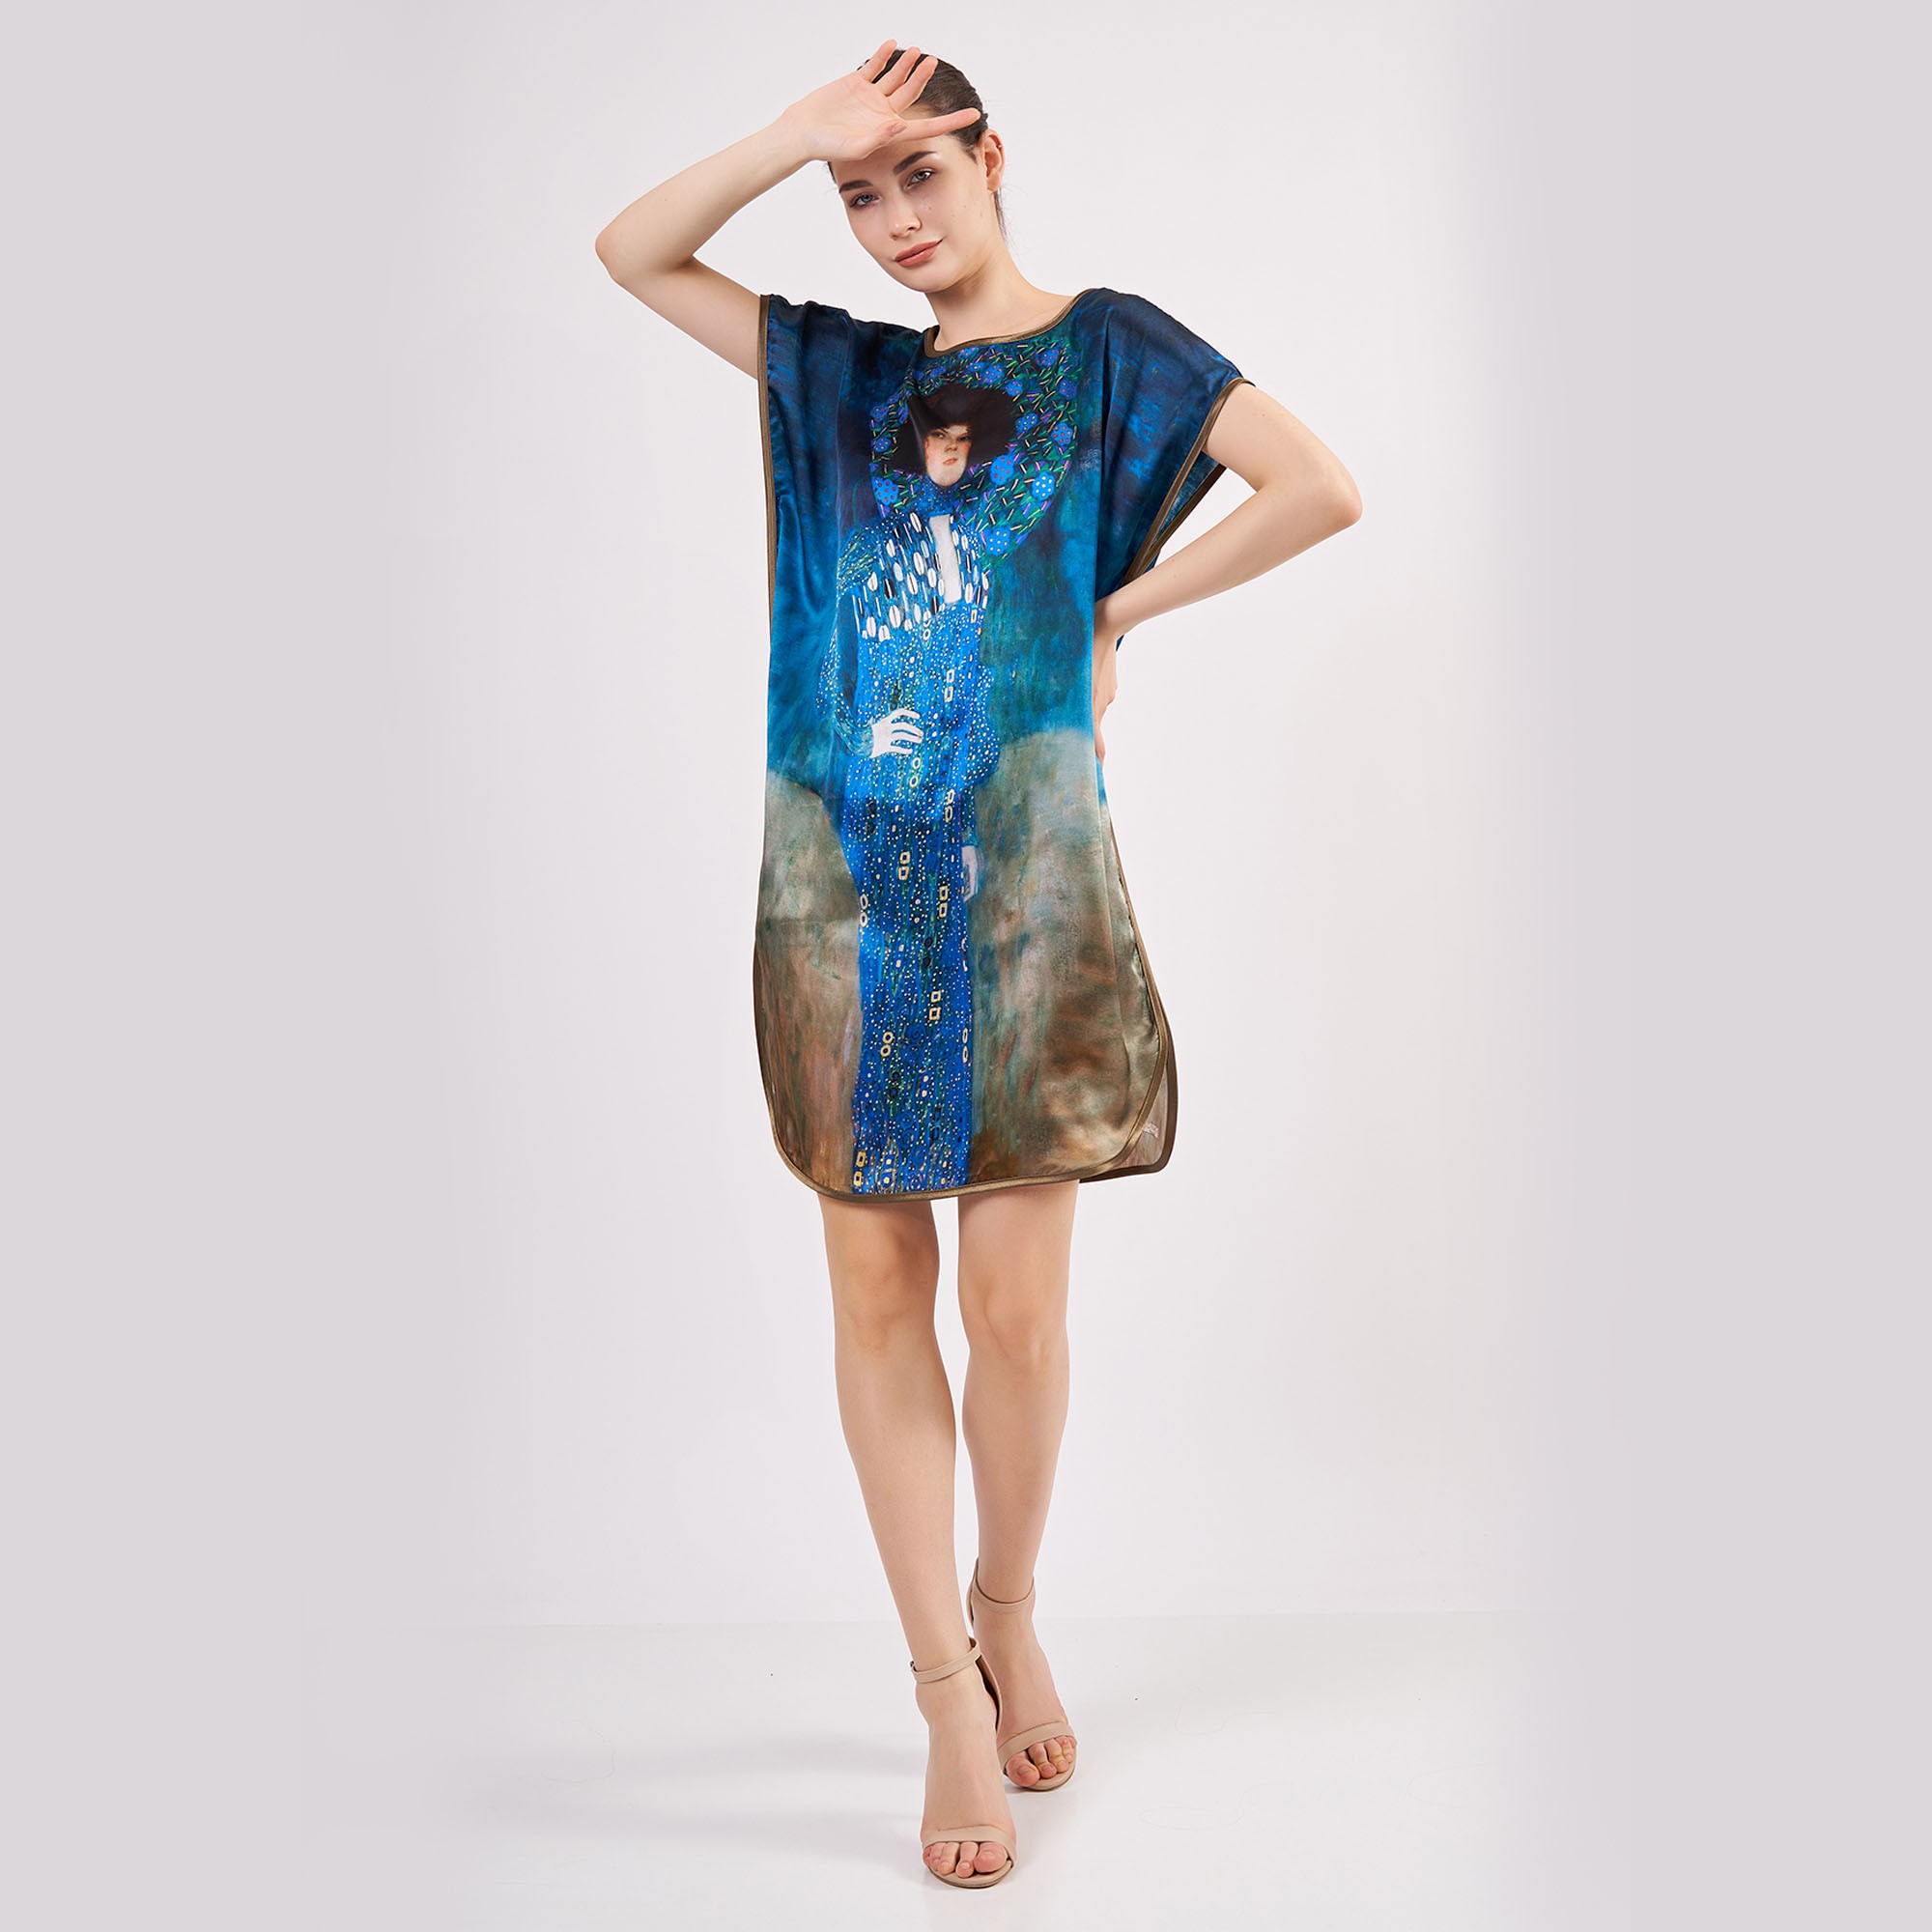 فستان حرير قصير ١٠٠٪ | Gustav Klimt Emilie Floge